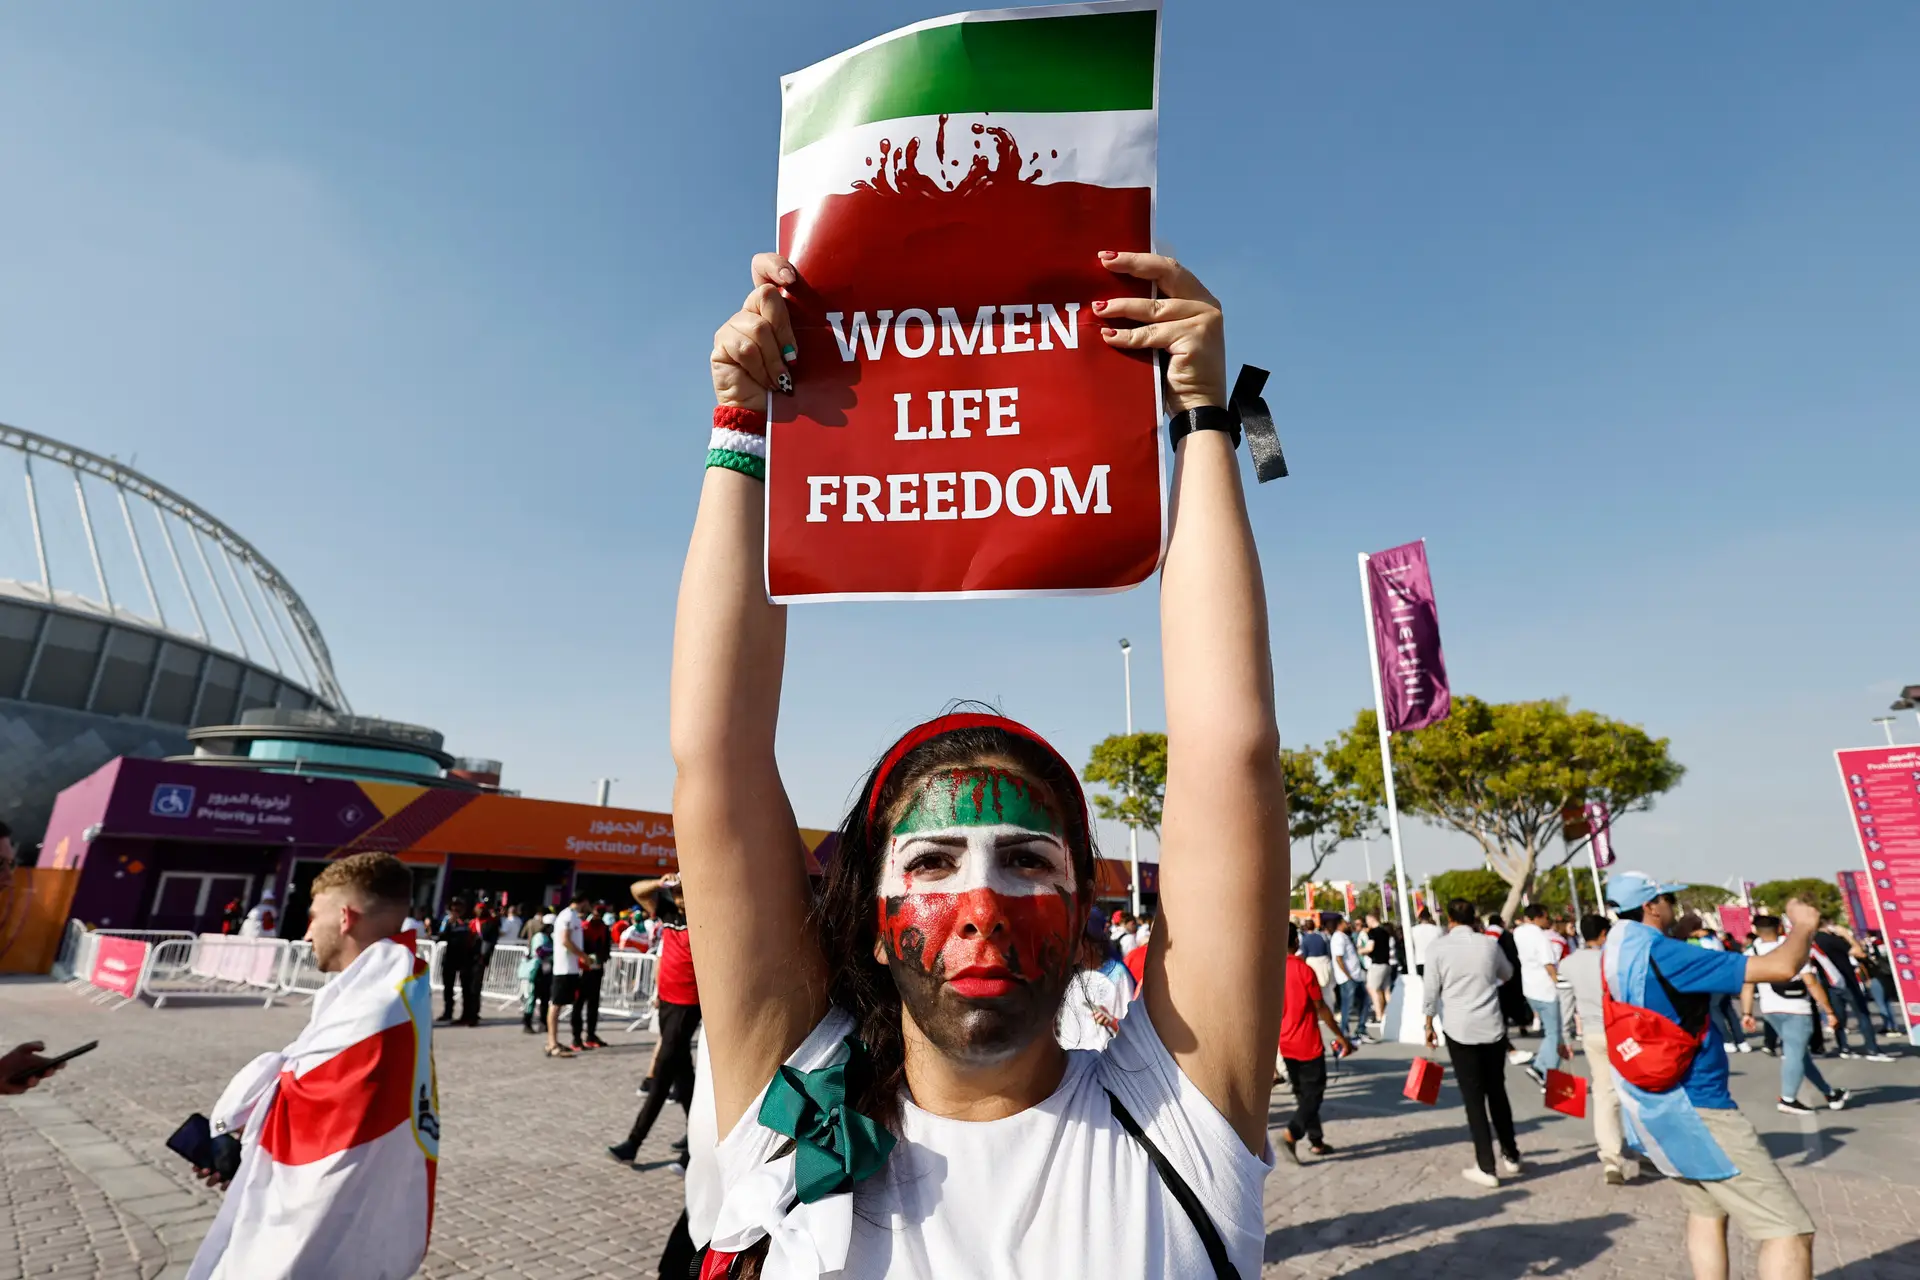 Protesto contra o regime iraniano antecede o jogo Inglaterra-Irão